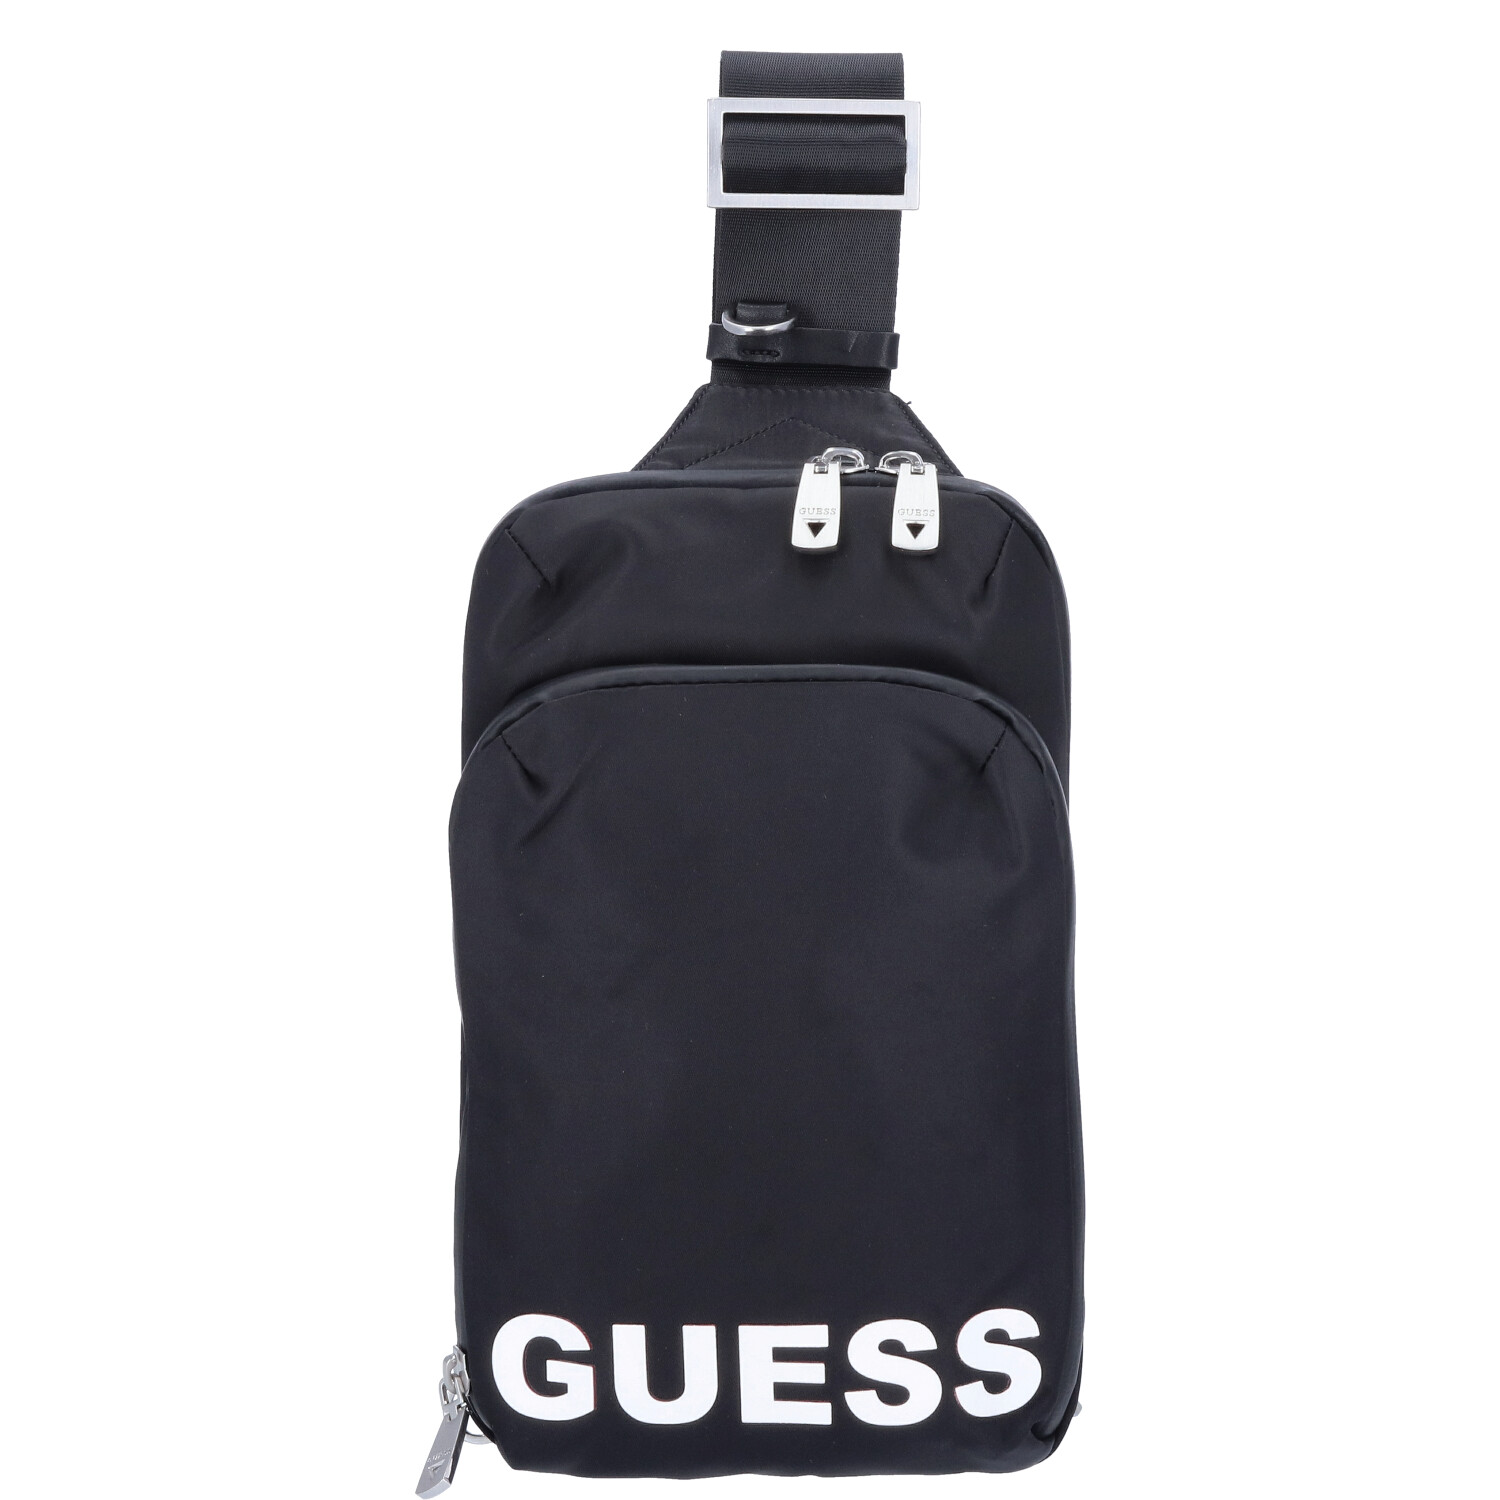 GUESS Crossover Bodybag Maxi Logo Black